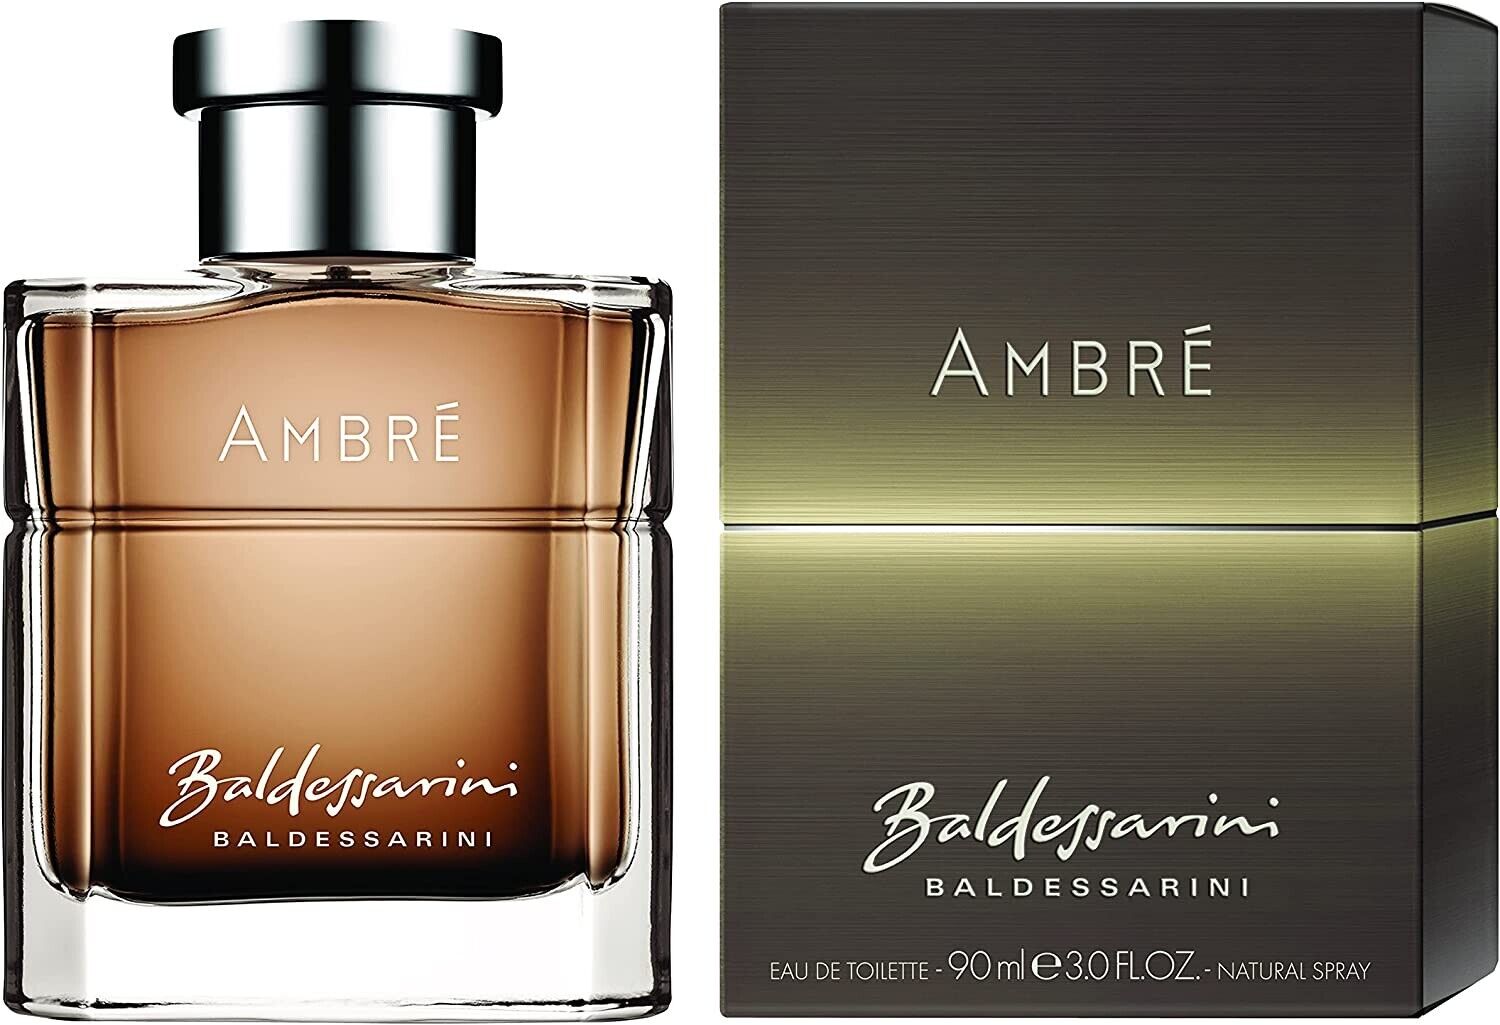 Baldessarini Ambre For Men Eau De Toilette 90ml at Ratans Online Shop - Perfumes Wholesale and Retailer Fragrance